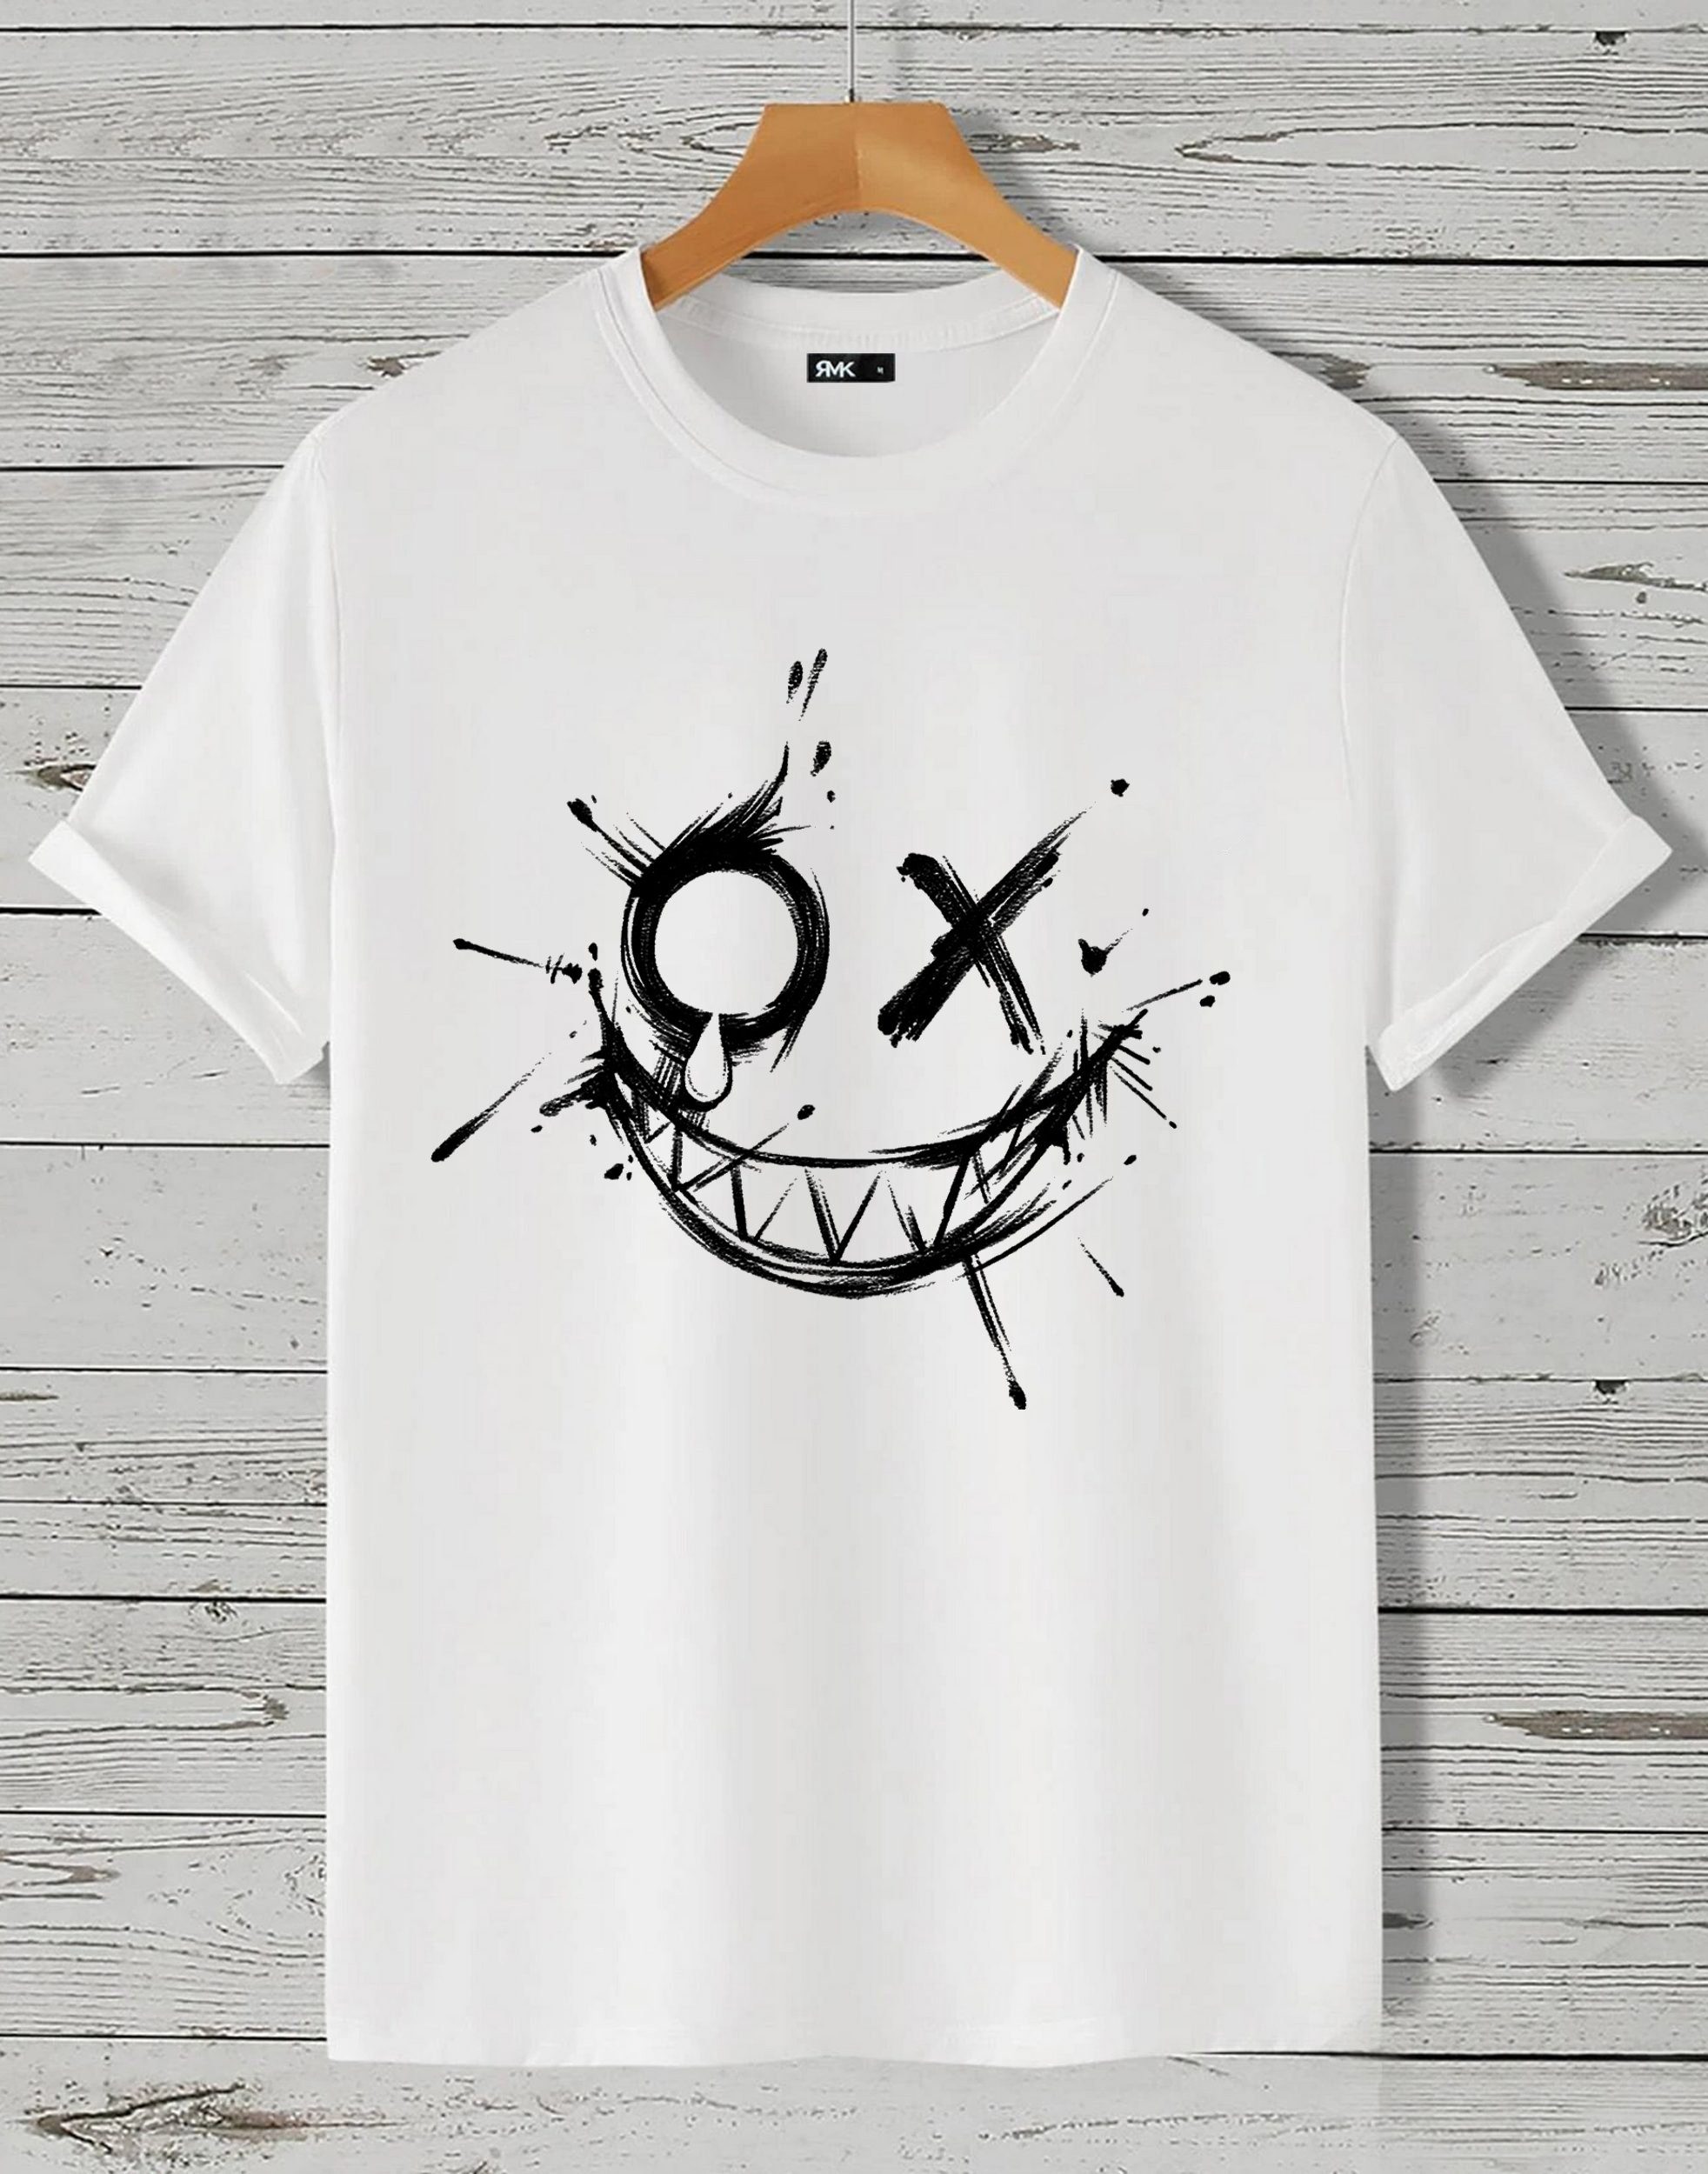 RMK T-Shirt Herren Shirt Rundhals Vintage Smile Smiley in Unifarbe, aus Baumwolle Weiß_1